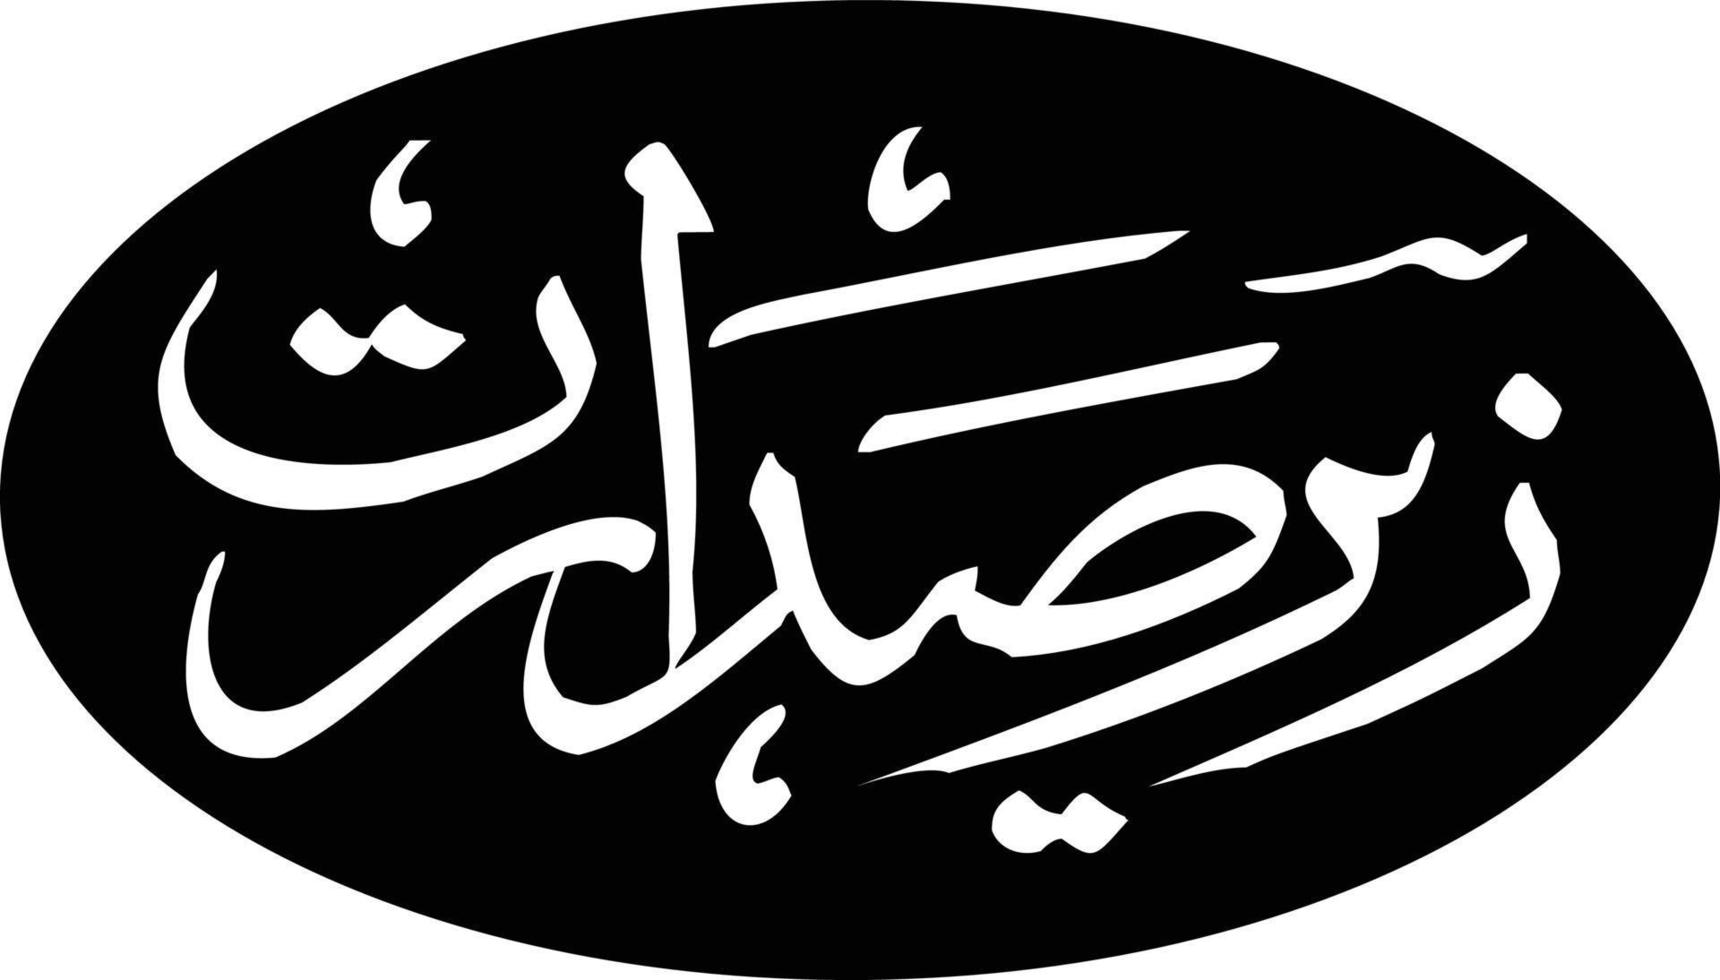 zear sudarat título islámico urdu árabe caligrafía vector libre